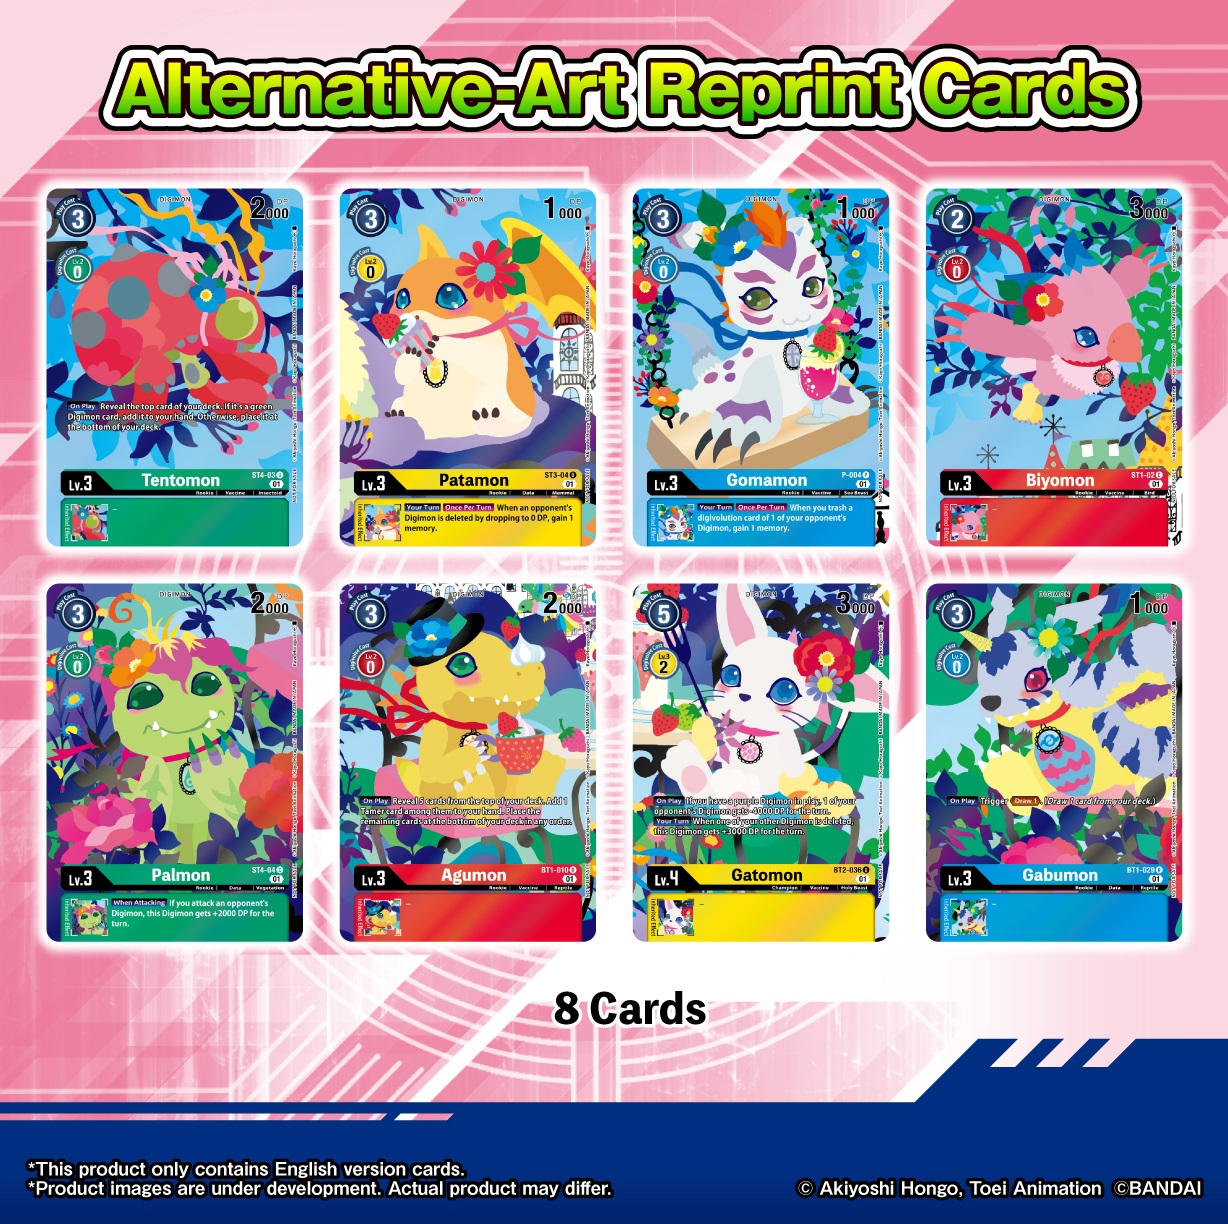 Digimon Playmat and Card Set 2 (PB-09 Floral Fun)